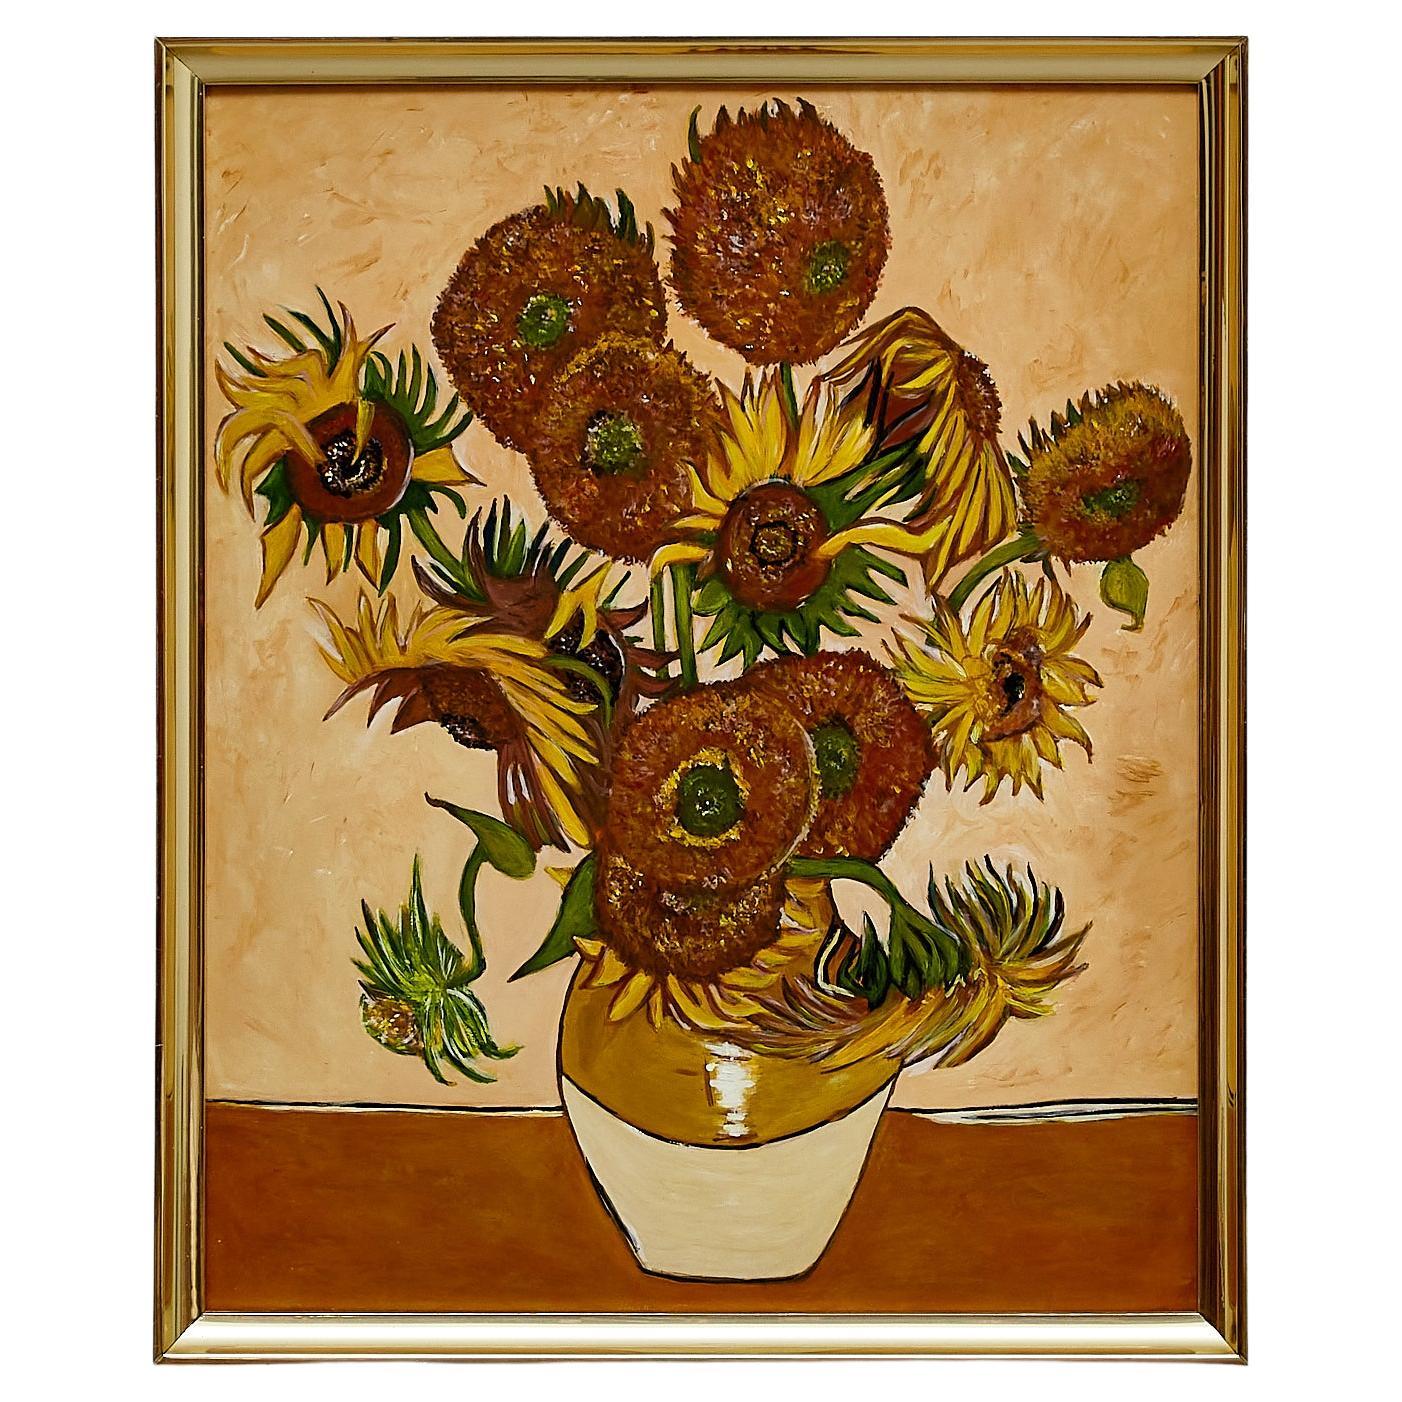 Gemälde im Stil von Van Gogh, ca. 2000.